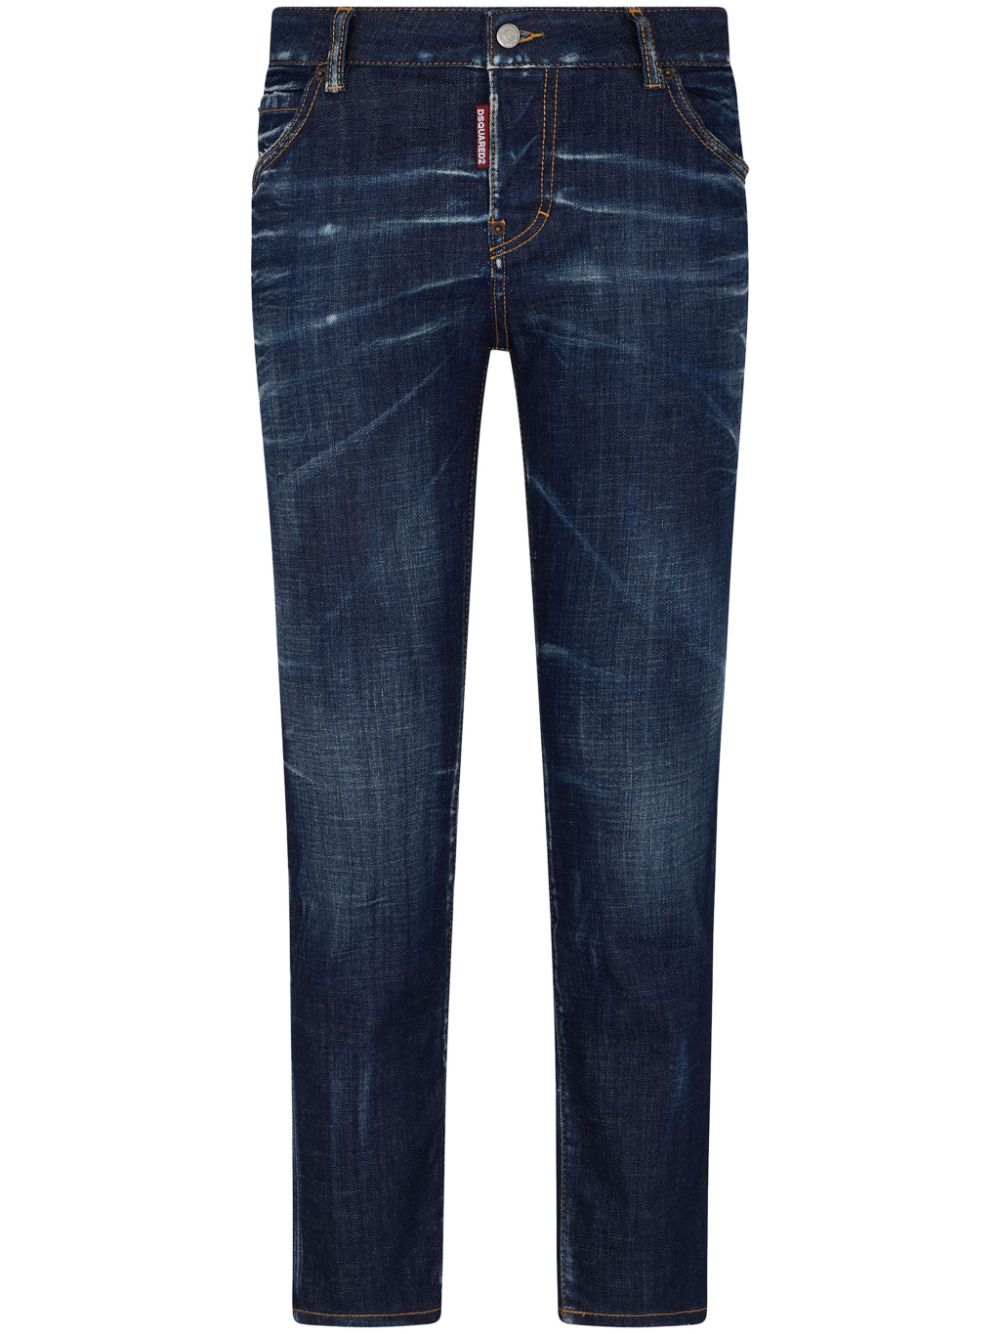 Jeans effetto baffuto dalla vestibilità slim<br>